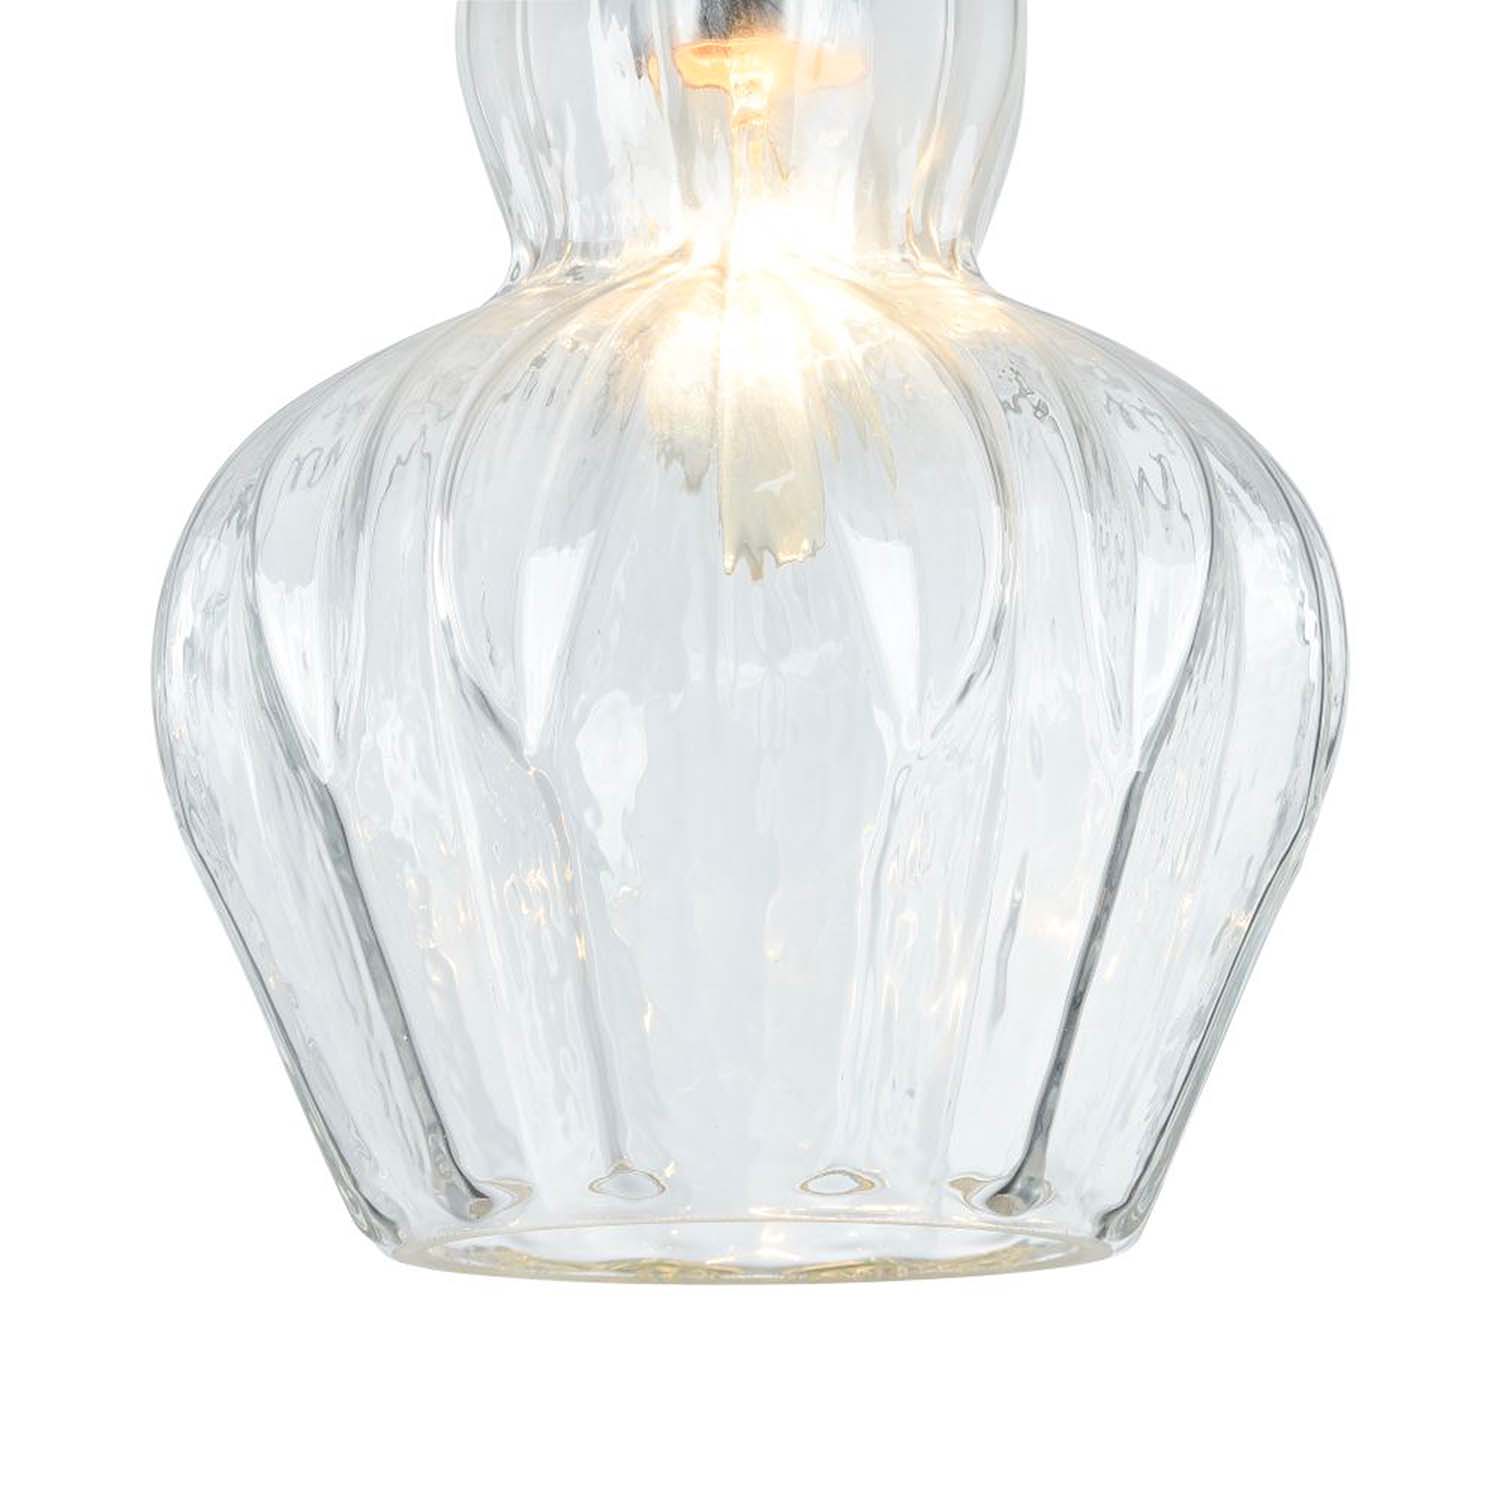 EUSTOMA - Vintage glass chandelier